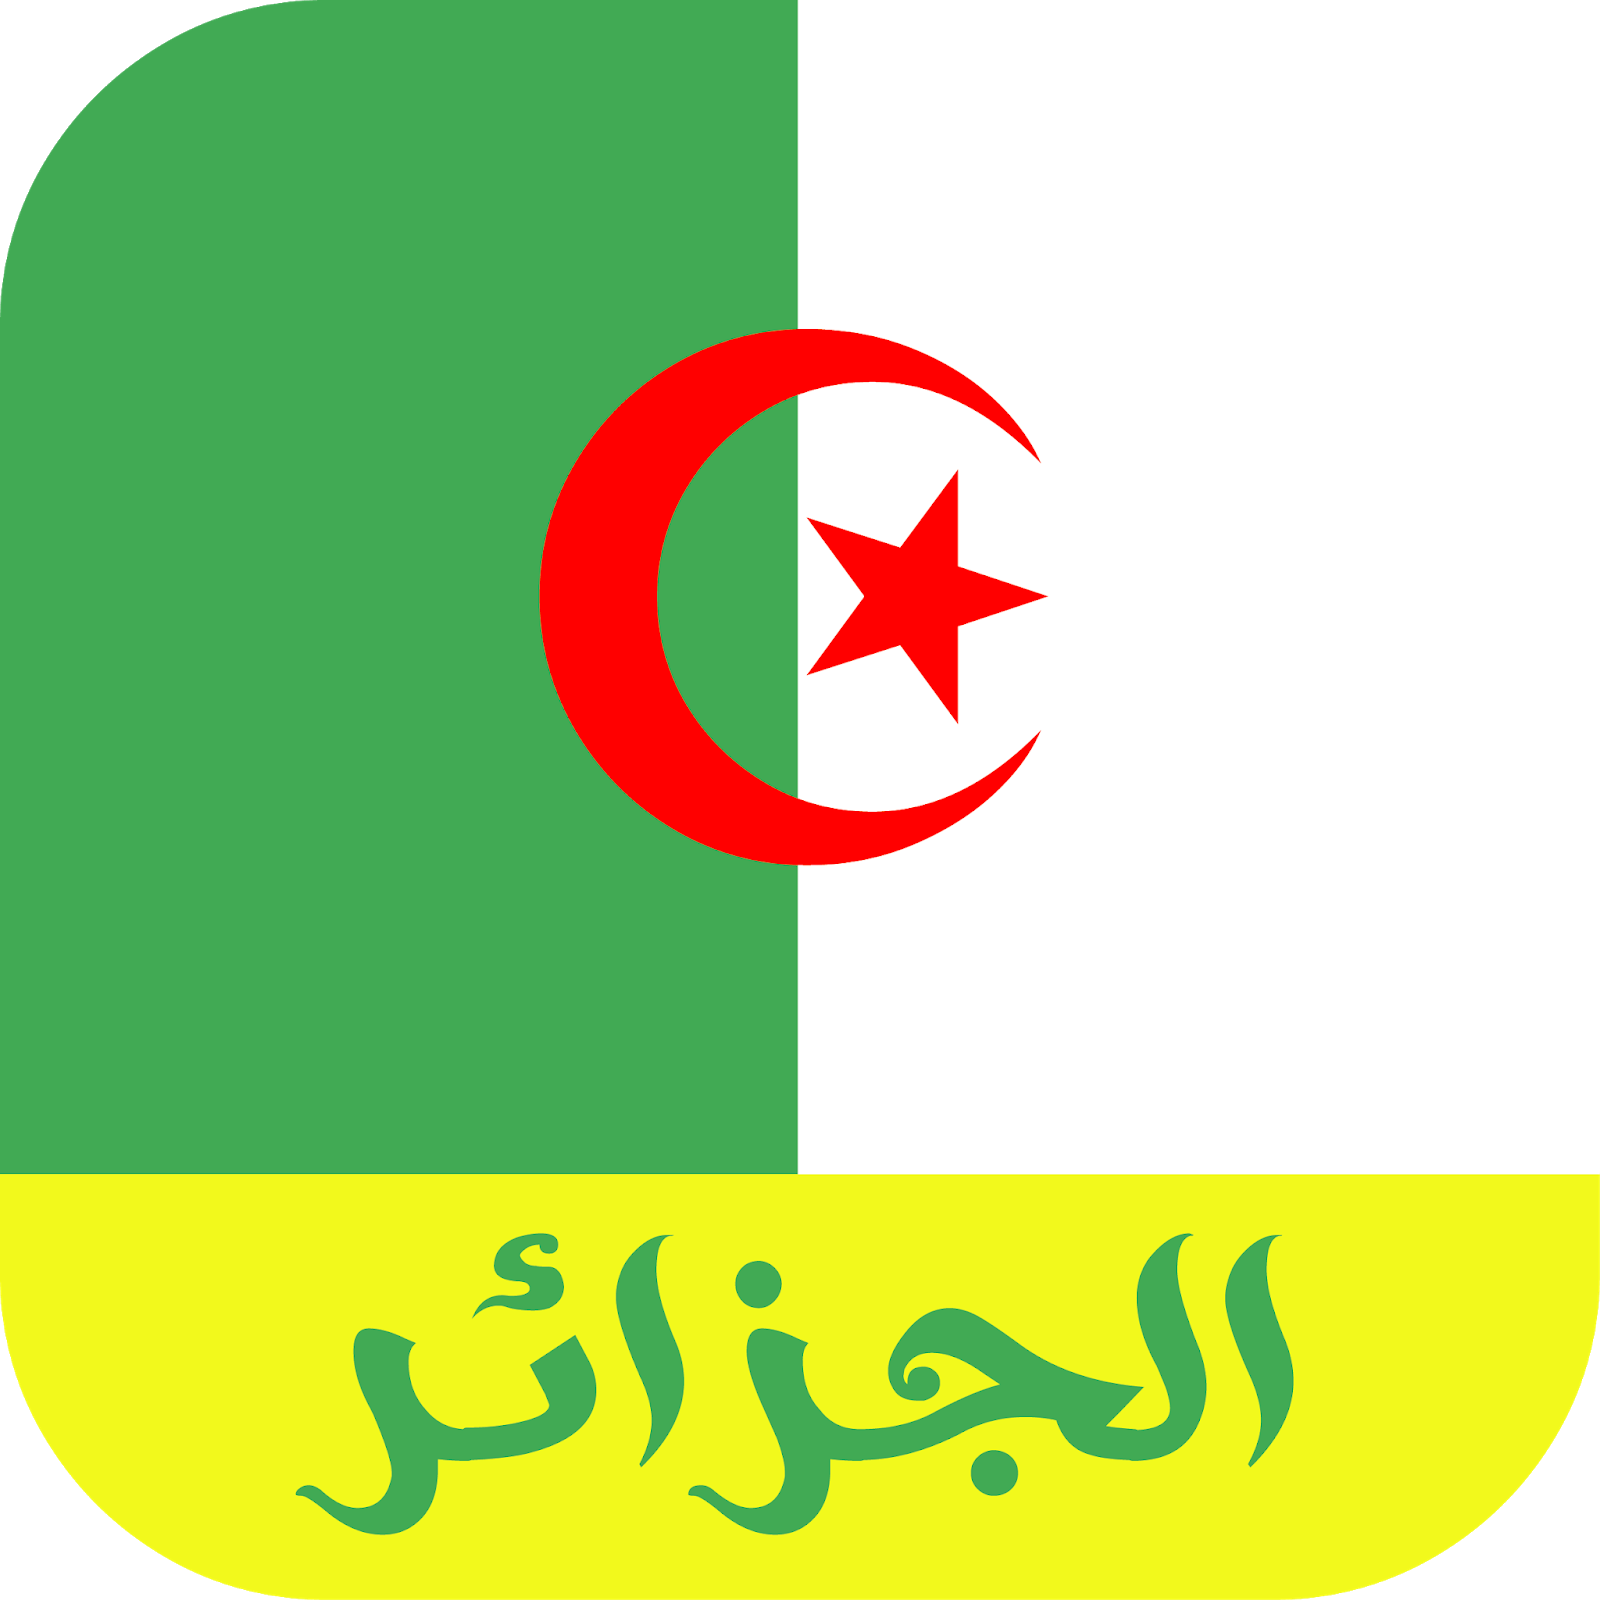 صور علم الجزائر , هكذا عبر الجزائريين عن انتمائهم لوطنهم - صور حب